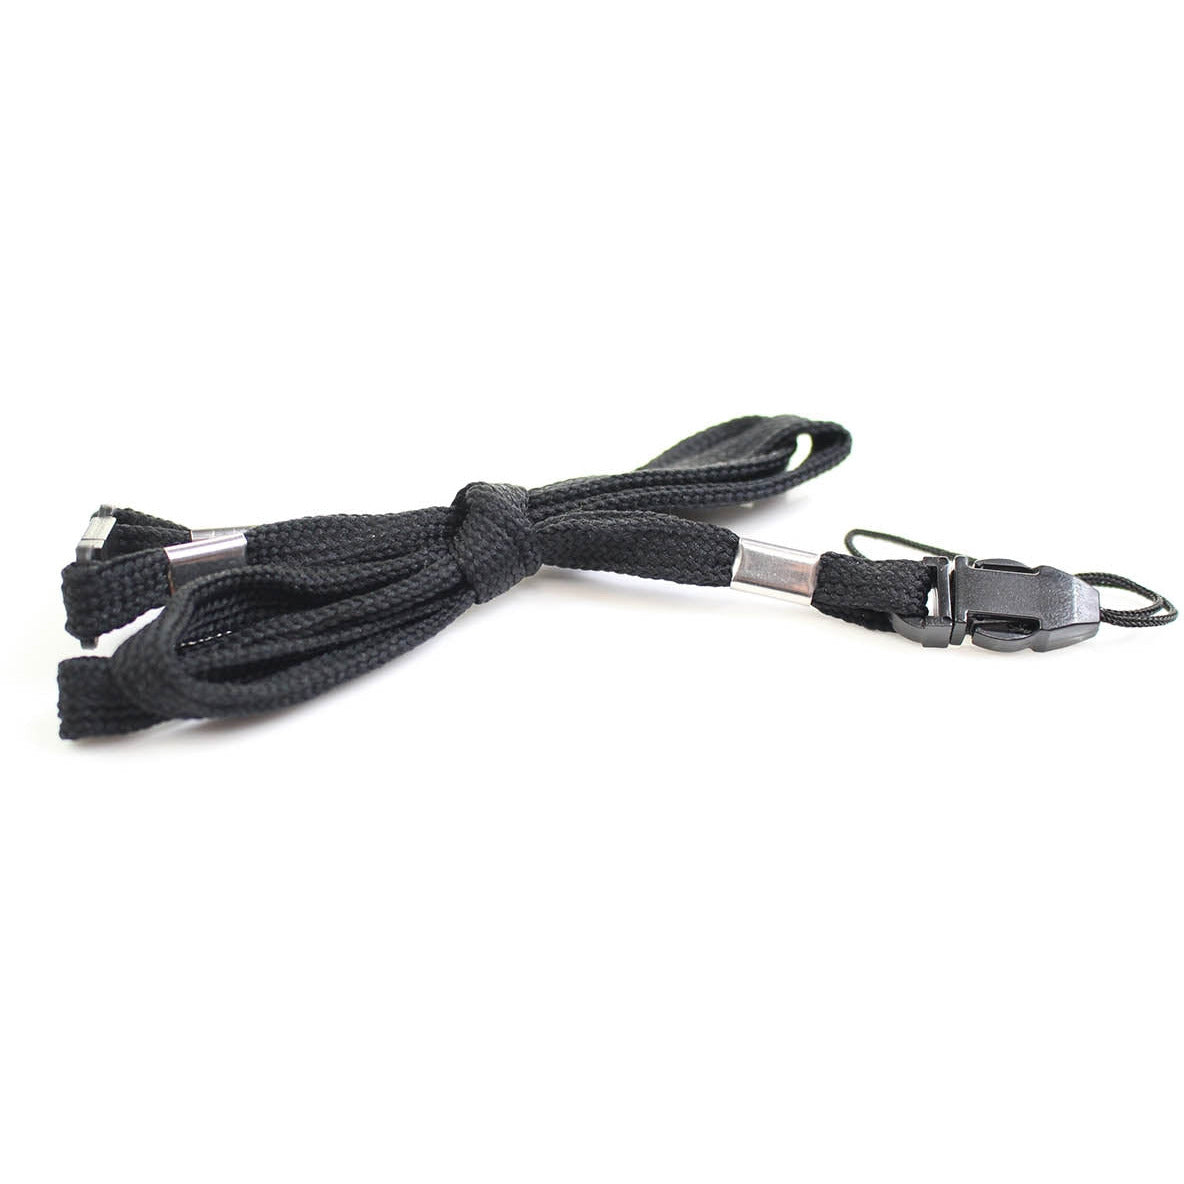 Medisave LED Pen Torch / Stylus / Ballpoint 3-in-1